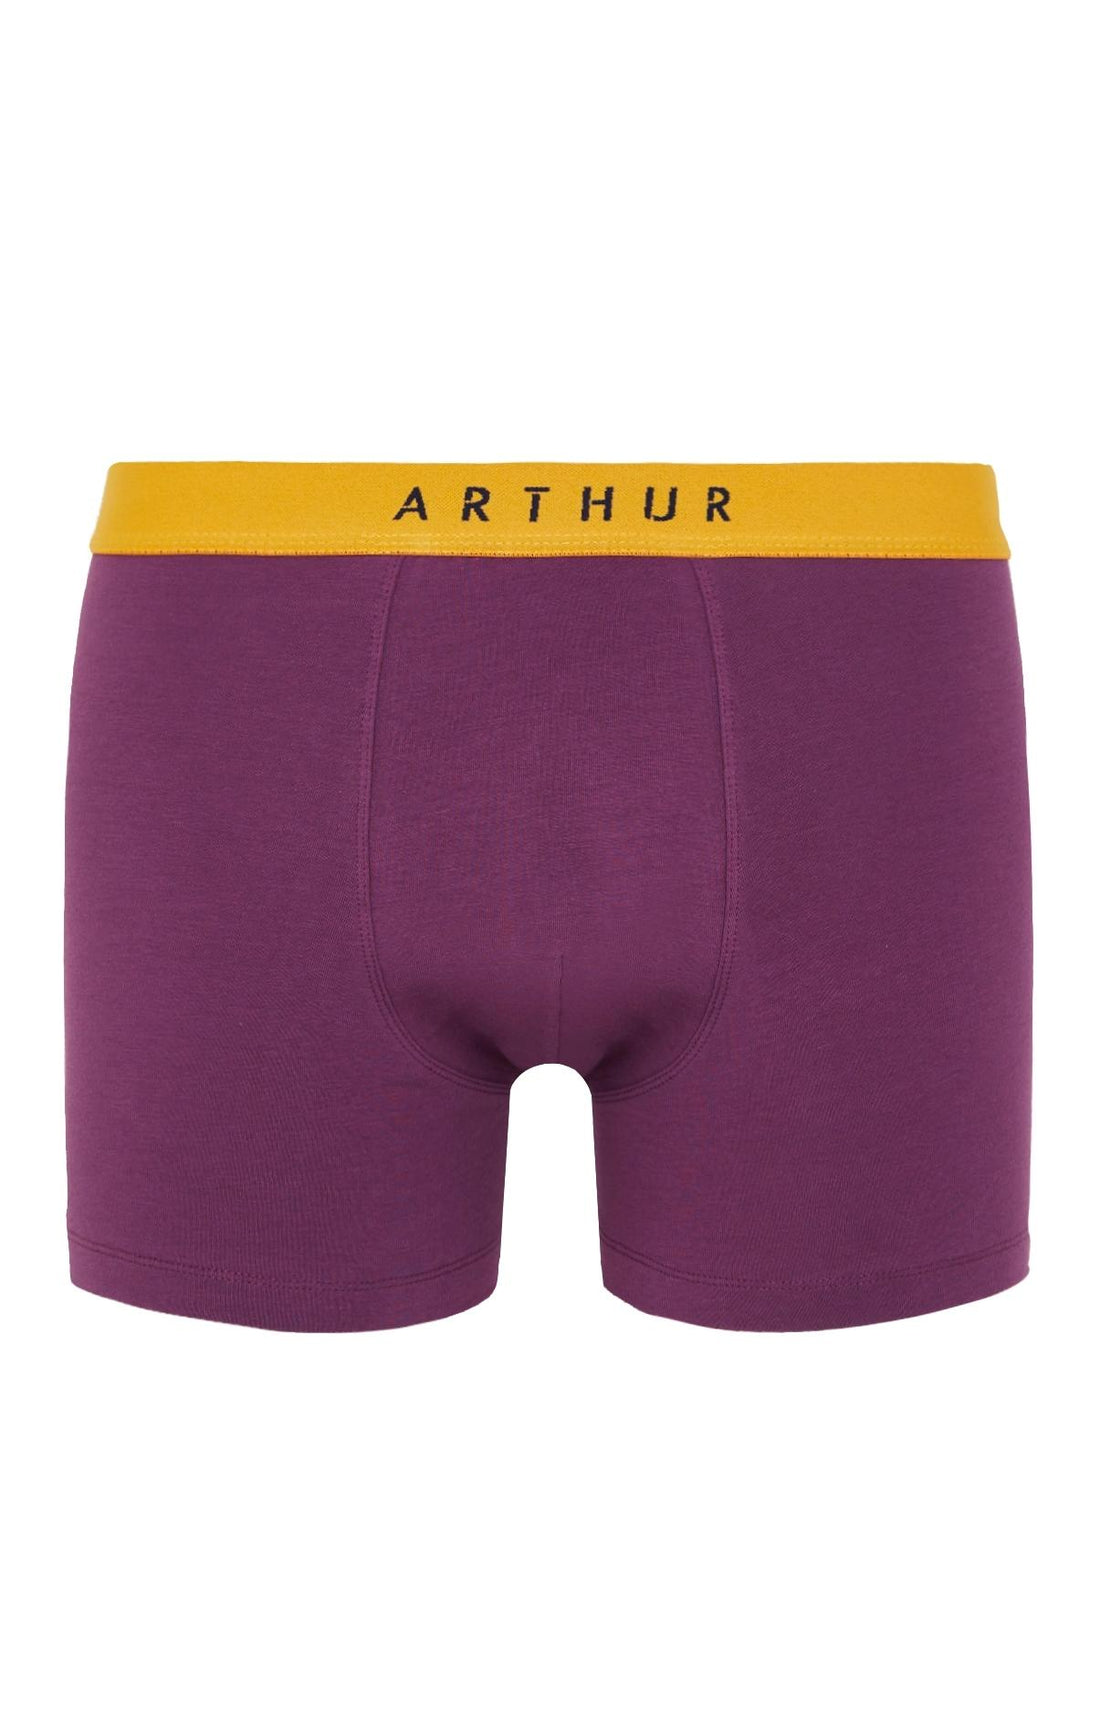 homme – Sous-vêtements Arthur | Boxer Marine